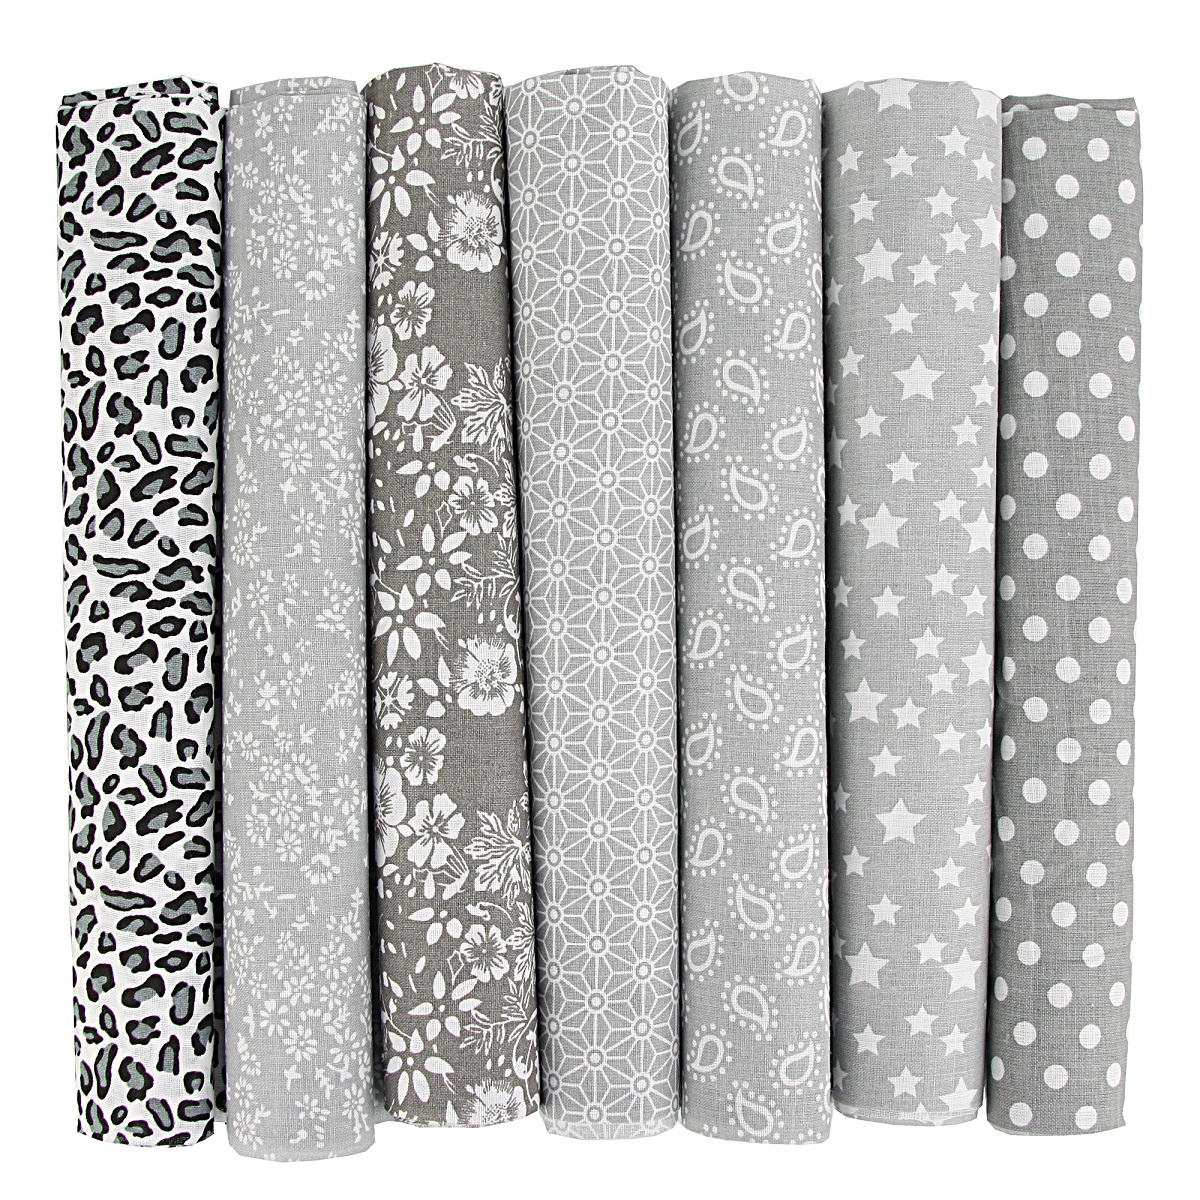 Newamishquilt 4 x 4 10 x 10cm 200 Pcs 100% Precut Cotton Fabric Squares Fabric Bundles for S